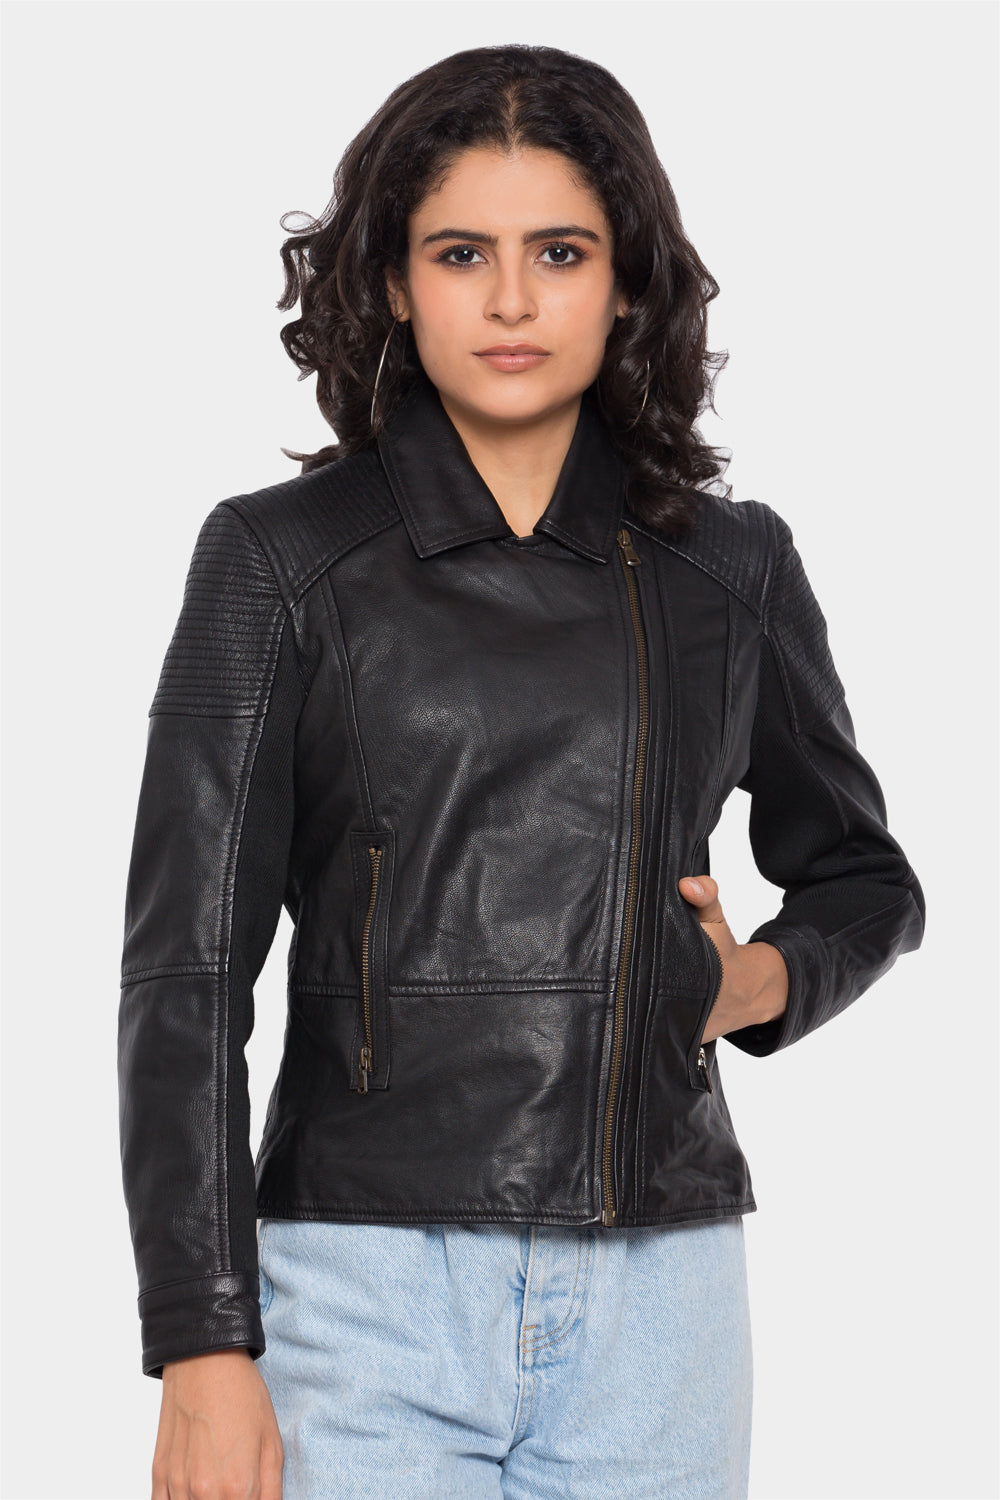 Ribbed Black Biker Leather Jacket